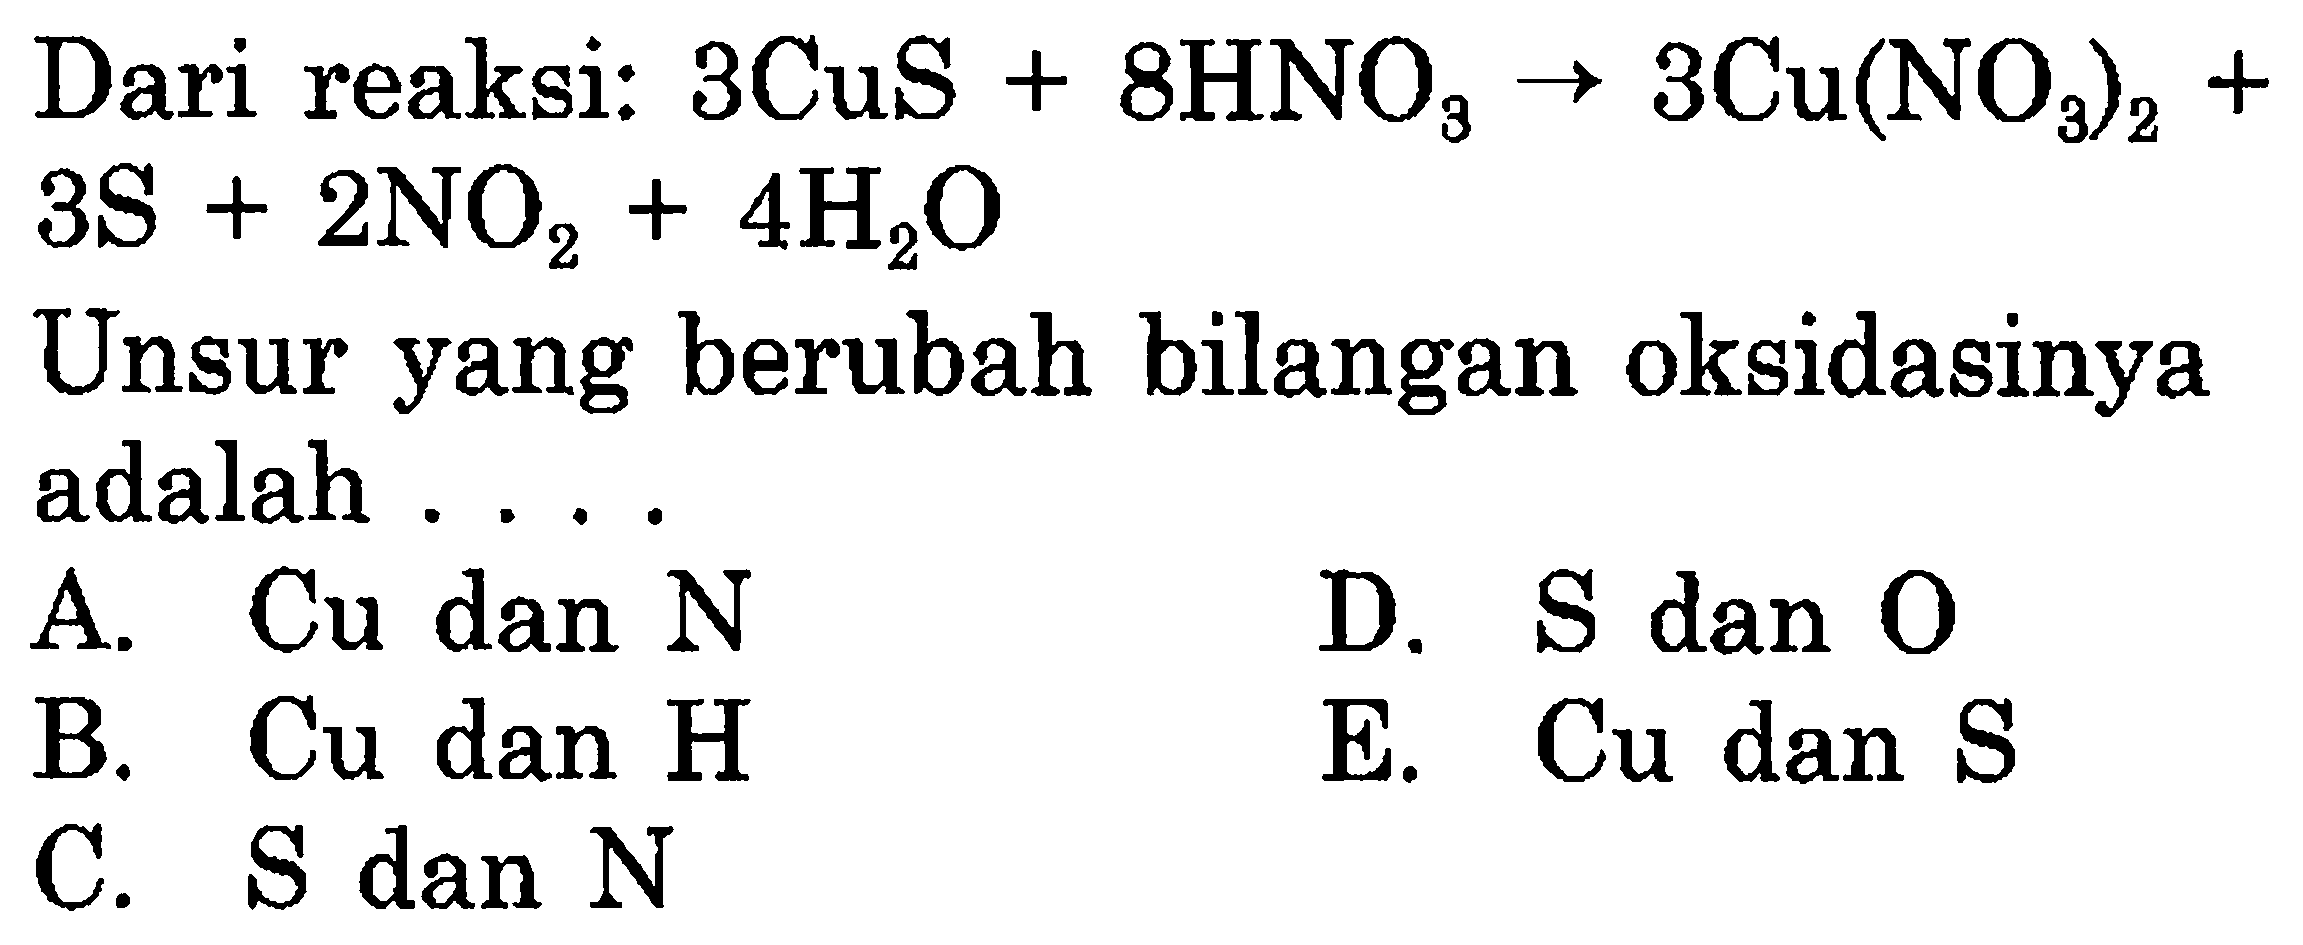 Dari reaksi: 3 CuS + 8 HNO3 -> 3 Cu(NO3)2 + 3 S + 2 NO2 + 4 H2O 
Unsur yang berubah bilangan oksidasinya adalah 
A. Cu dan N D. S dan O B. Cu dan H E. Cu dan S C. S dan N